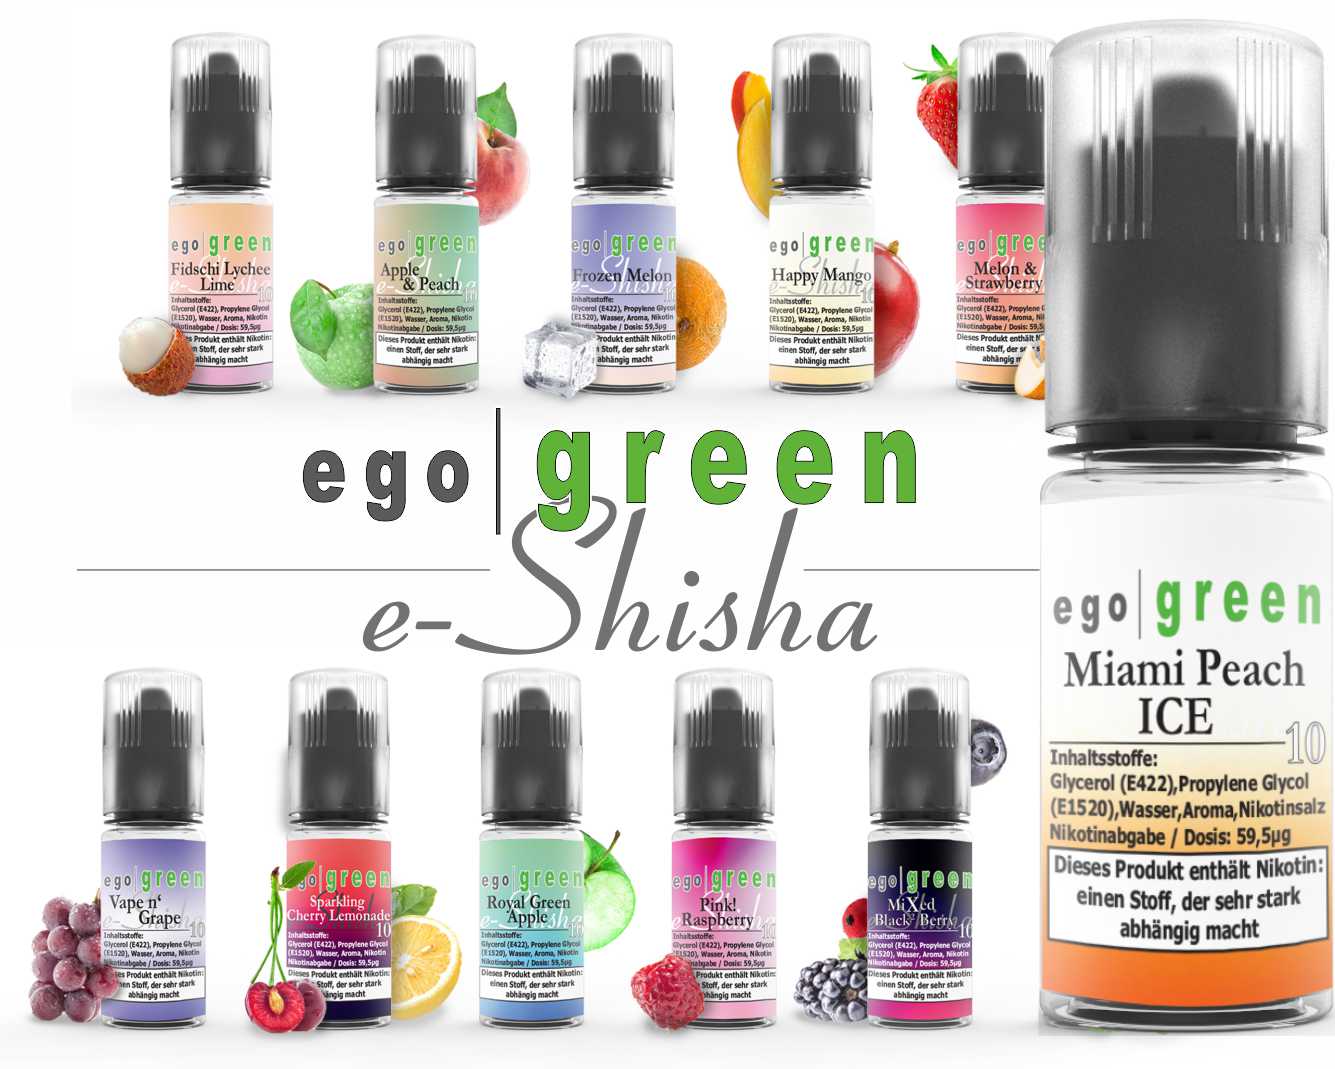 egogreen Fidschi Lychee Lime Nikotinsalz e-Shisha Liquid kaufen